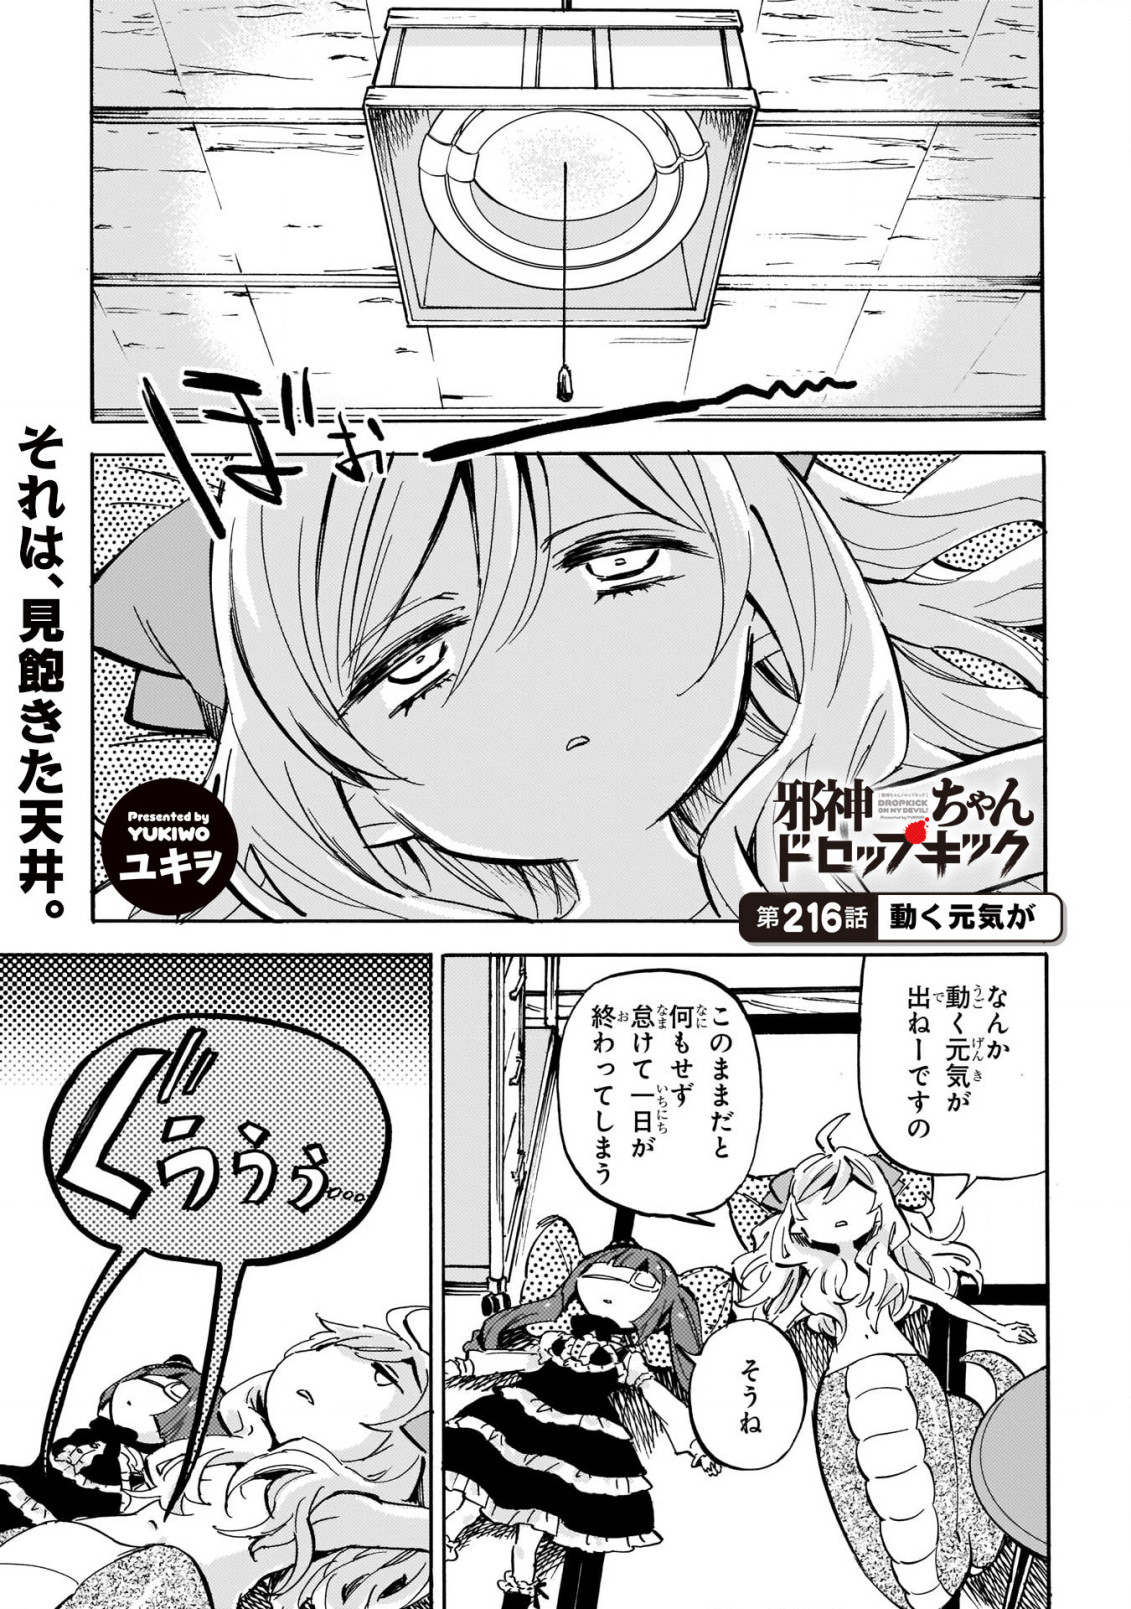 Jashin-chan Dropkick - Chapter 216 - Page 2